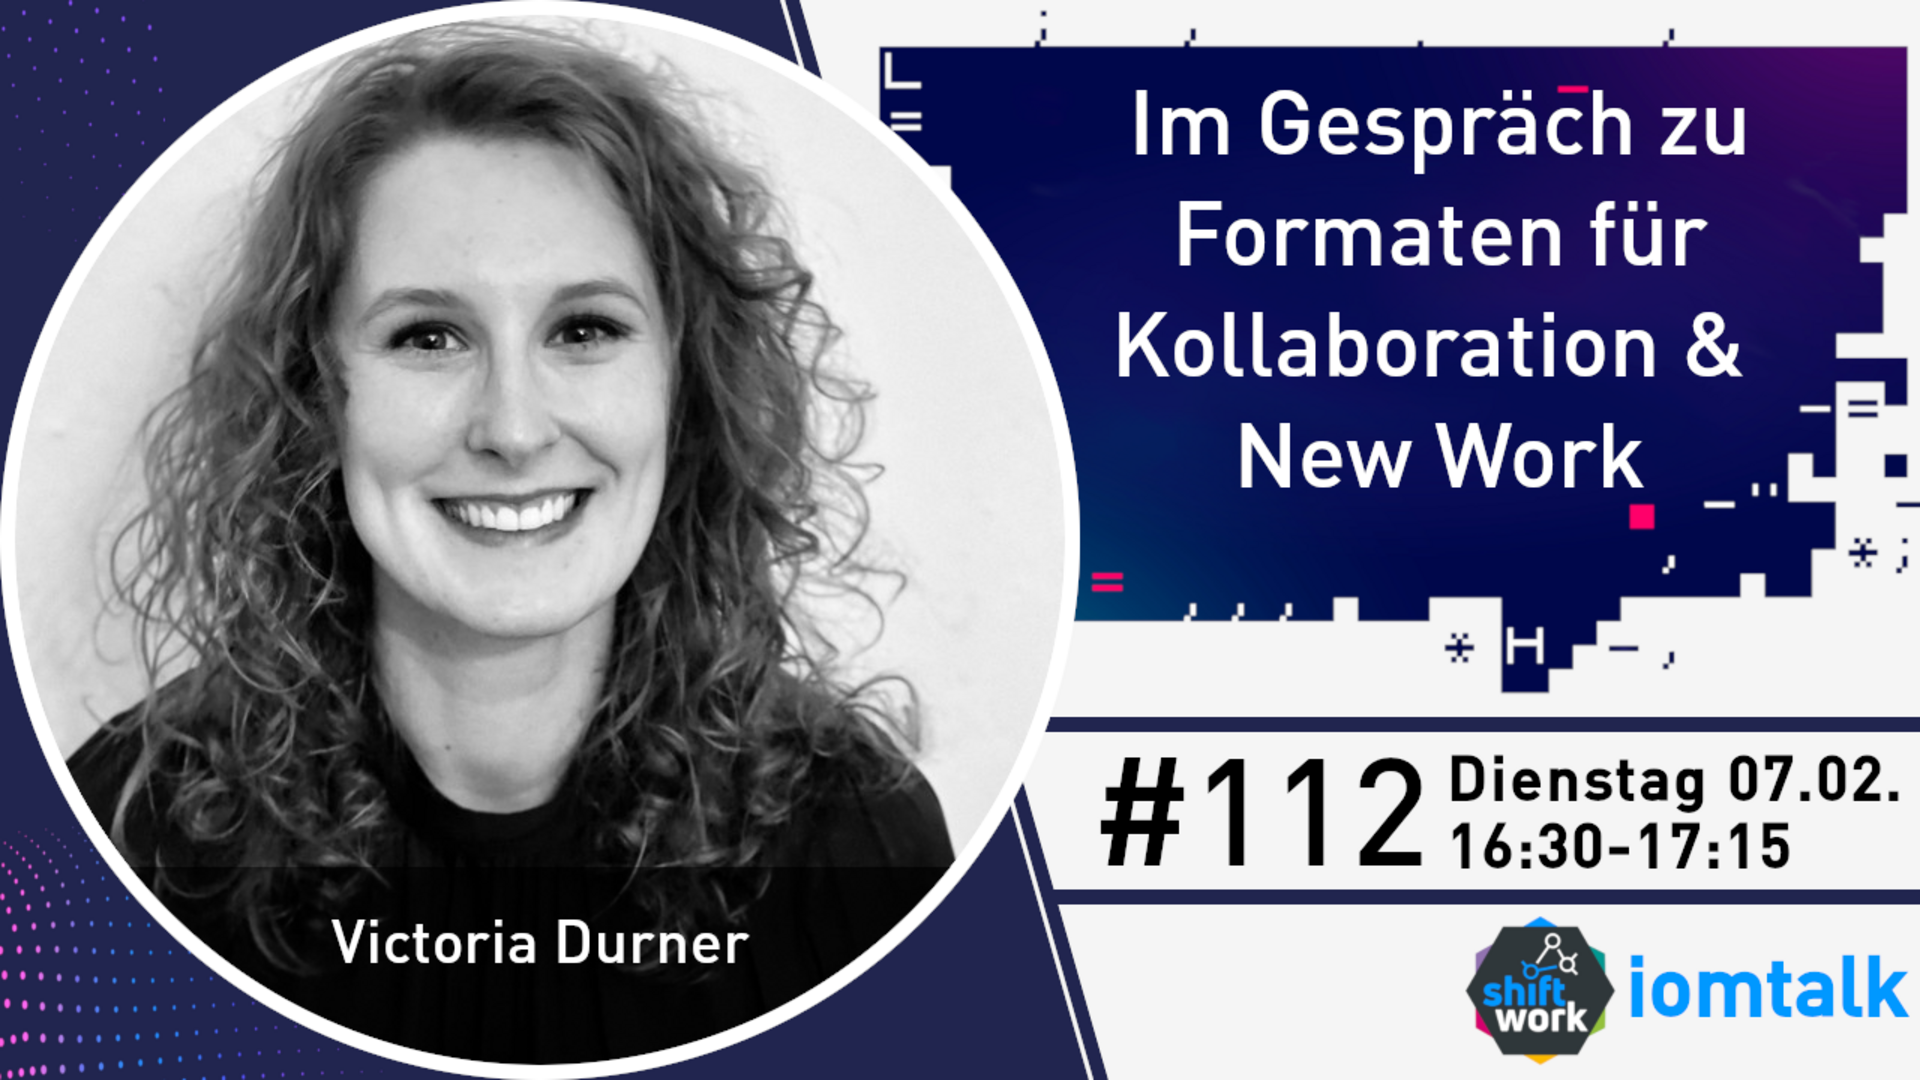 Im Gespräch mit Victoria Durner zu zukunftsorientierten Formaten für Kollaboration & New Work Booster